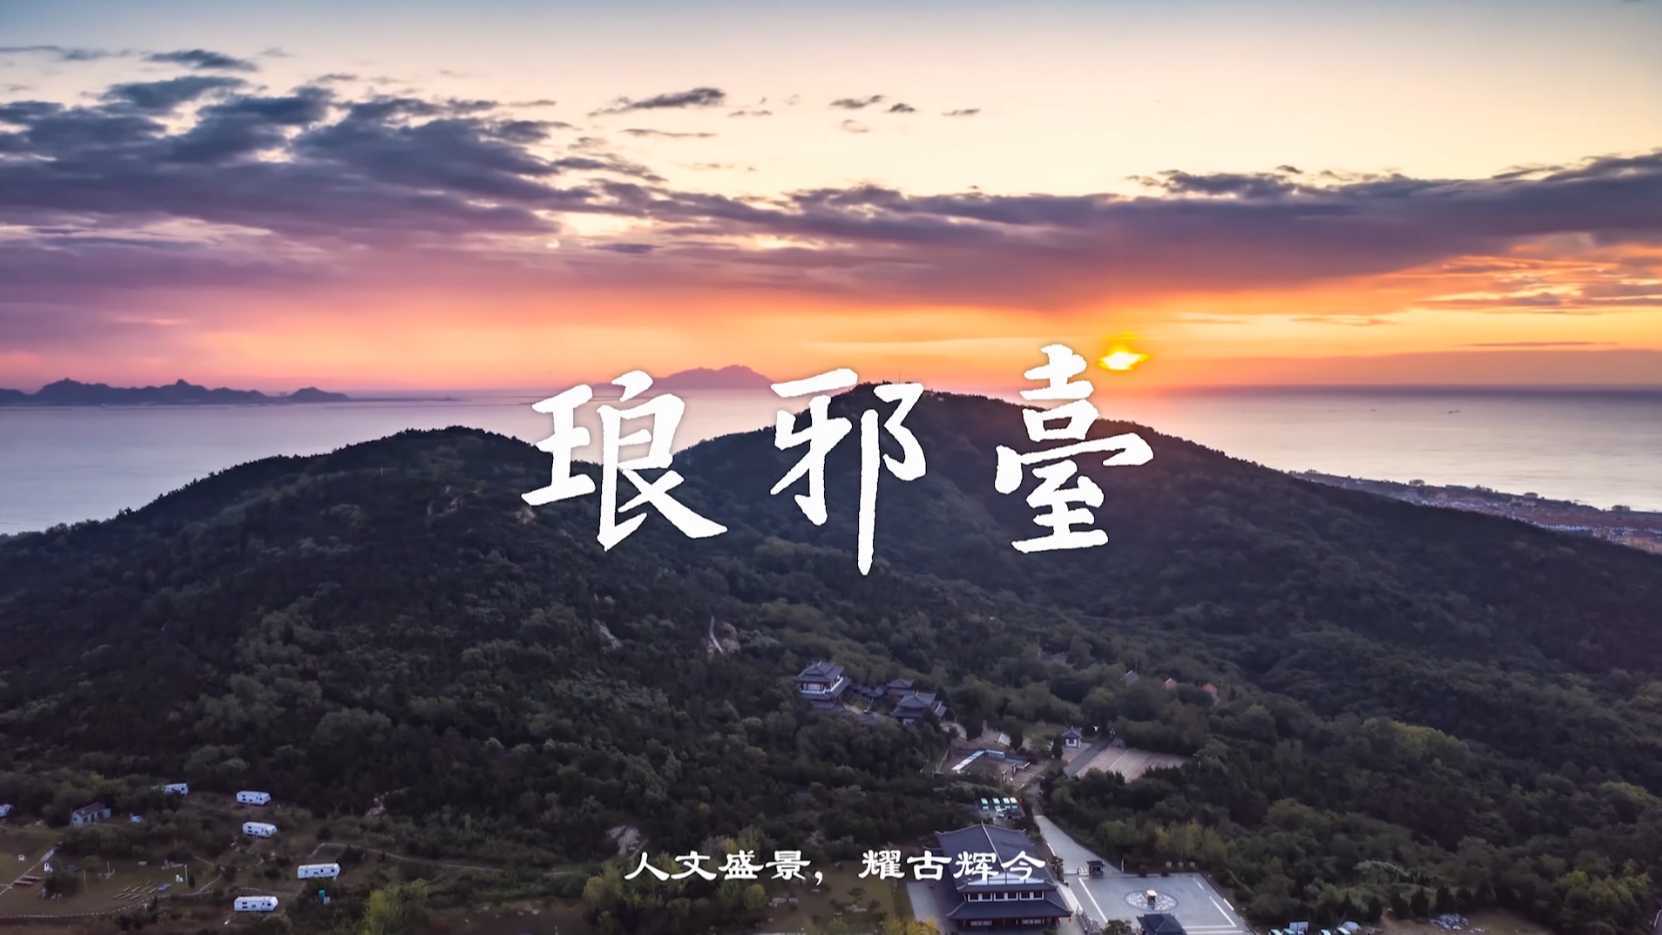 琅琊台景区宣传片